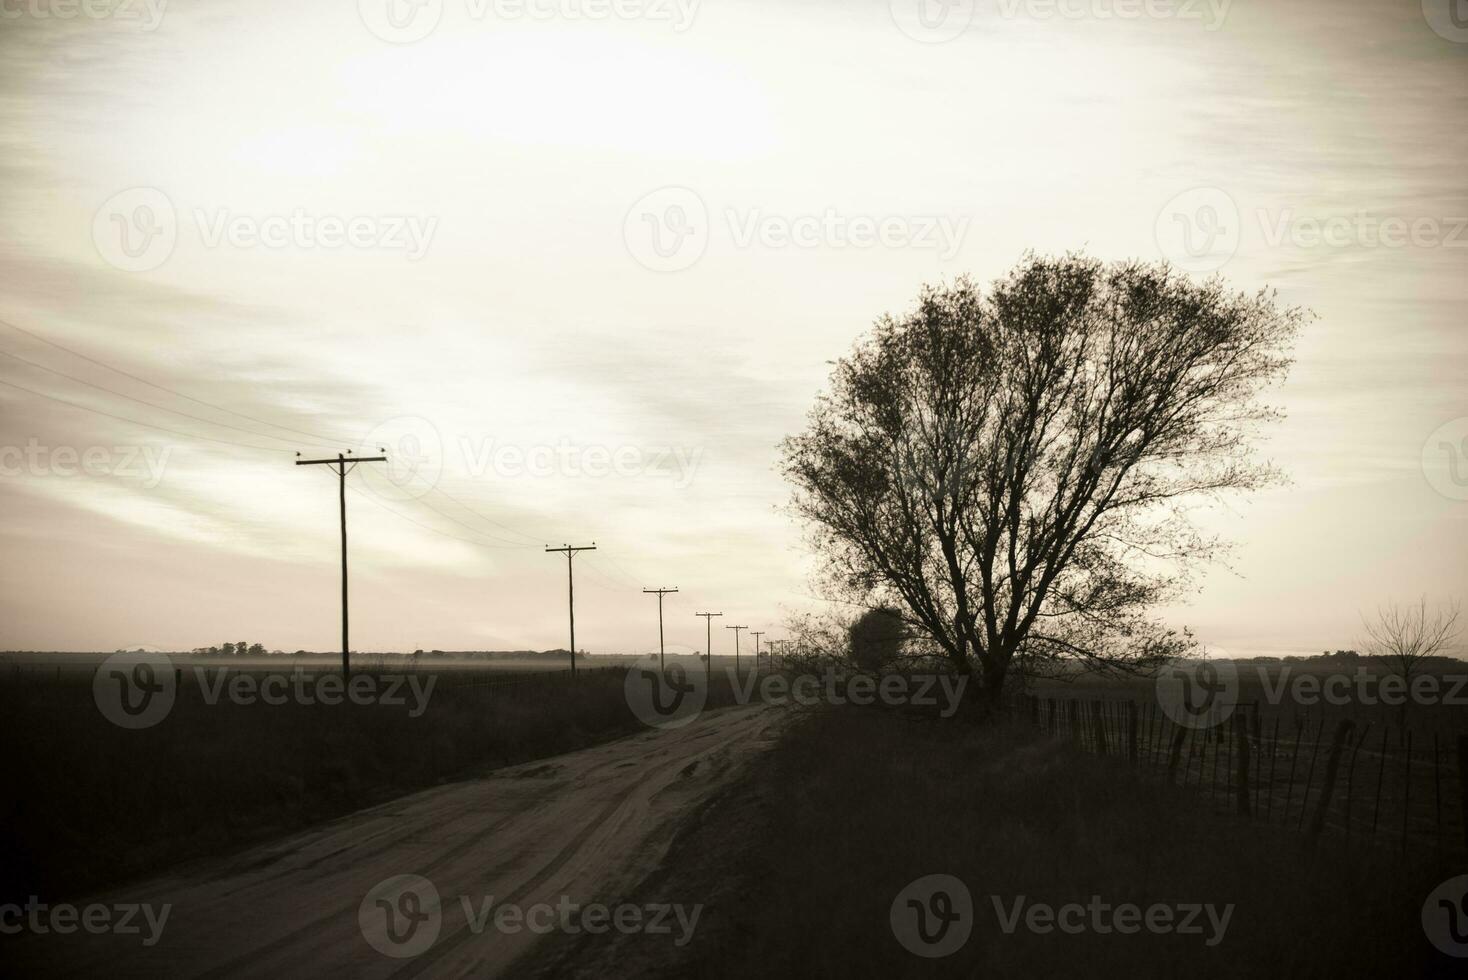 panorama com moinho de vento às pôr do sol, pampas, Patagônia, Argentina foto